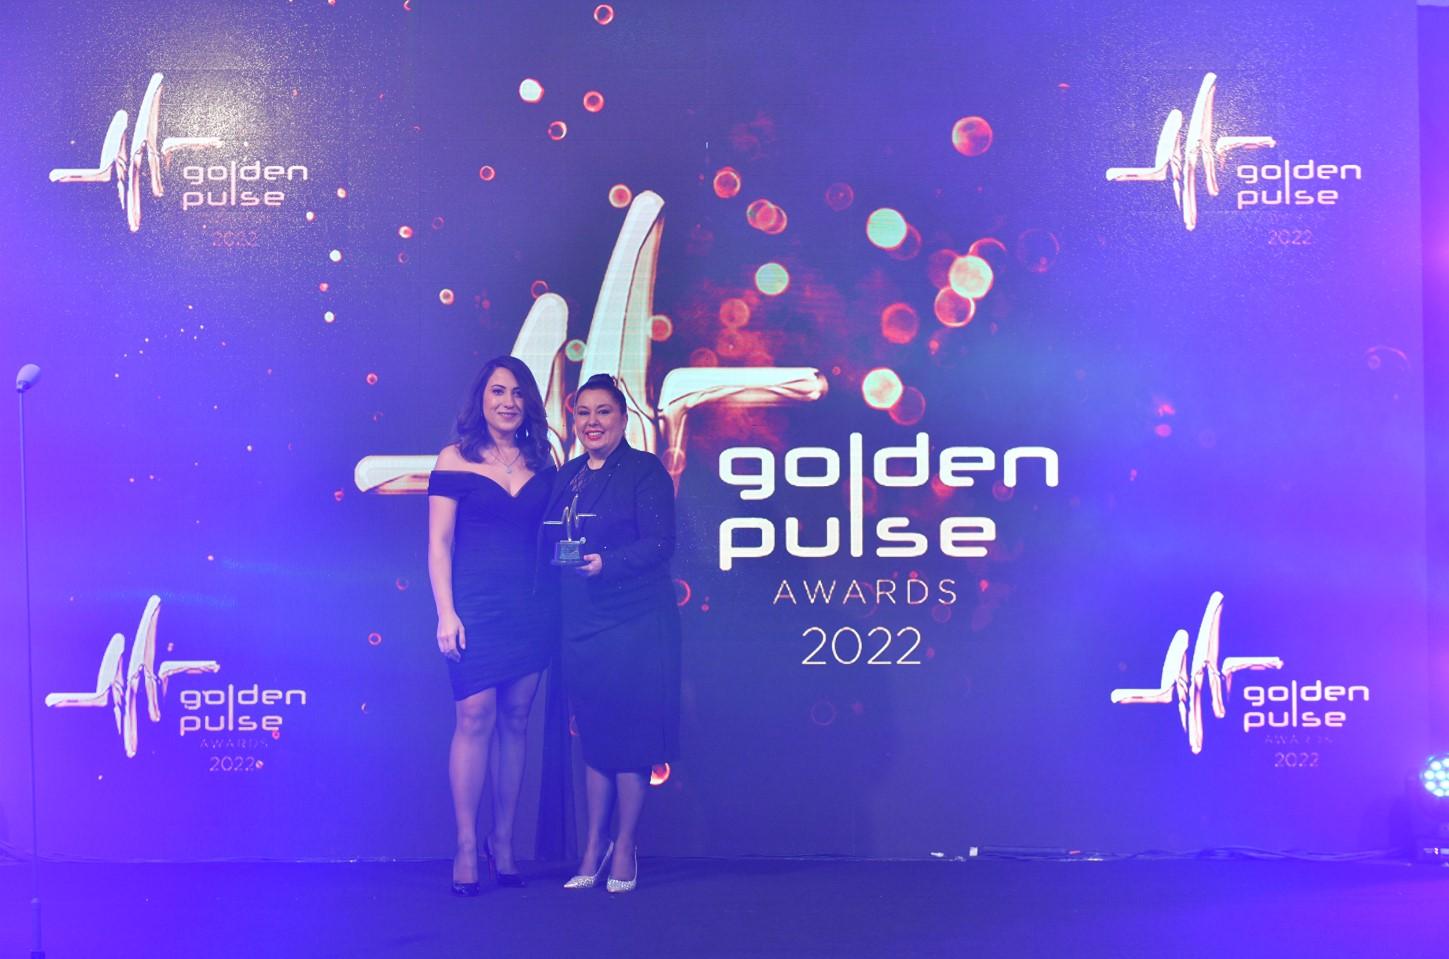 2021: Golden Pulse Awards – COVID Özel Ödülü / Aktif Destek Hareketi Image